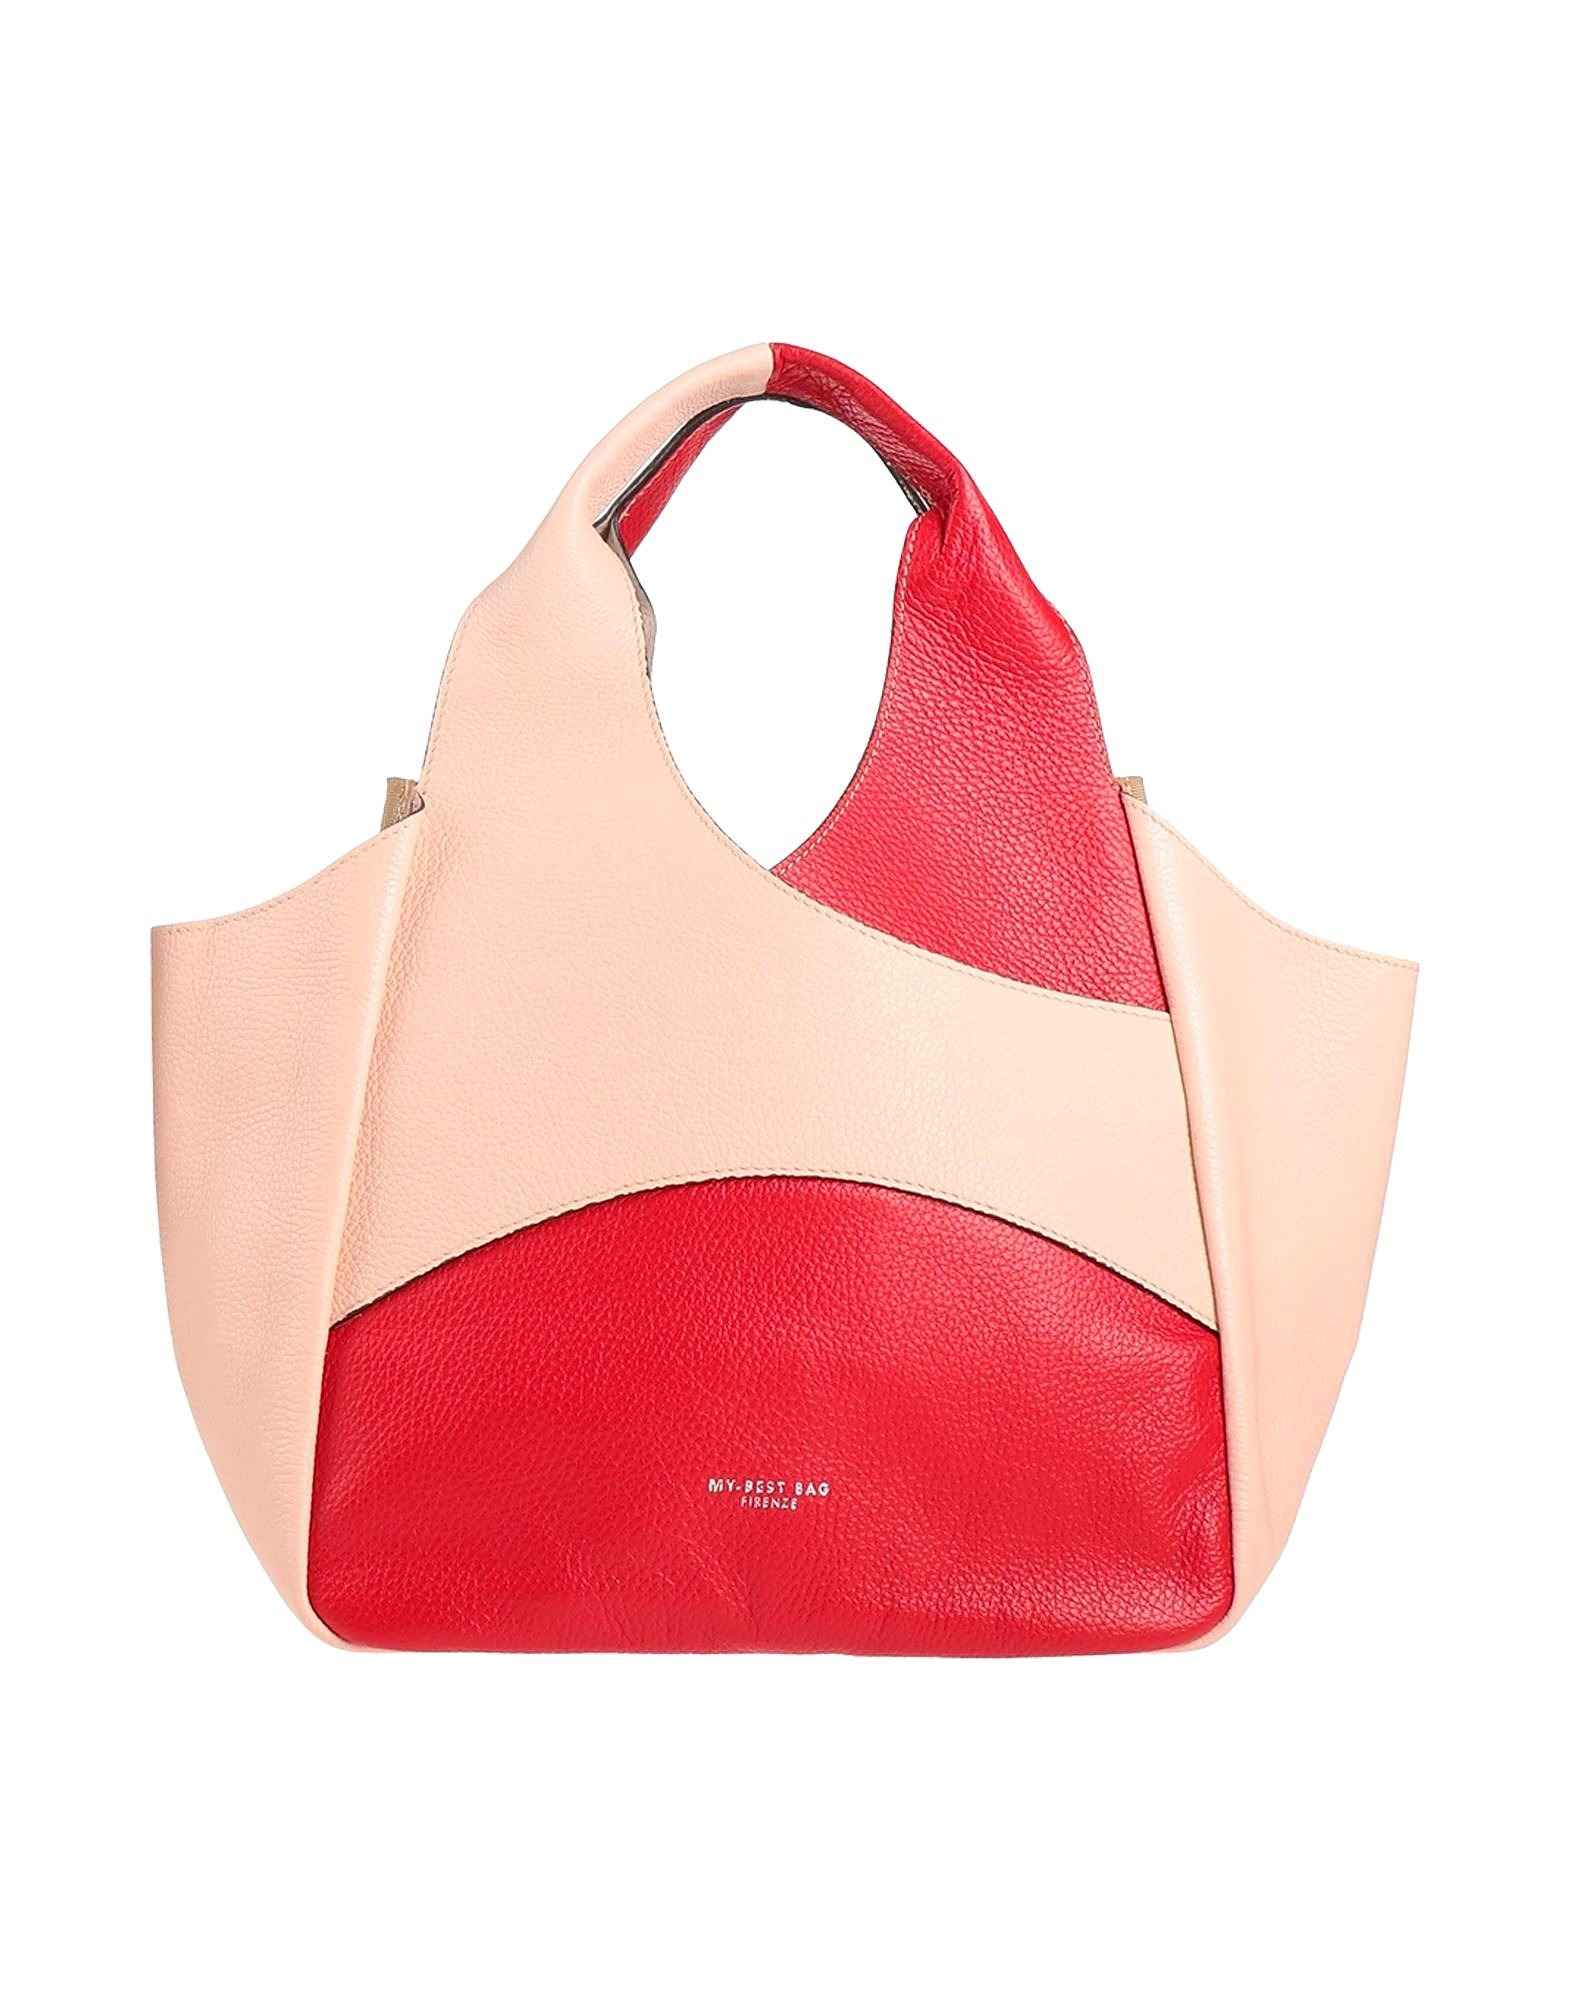 Cумка My-Best Bags, cветло-розовый